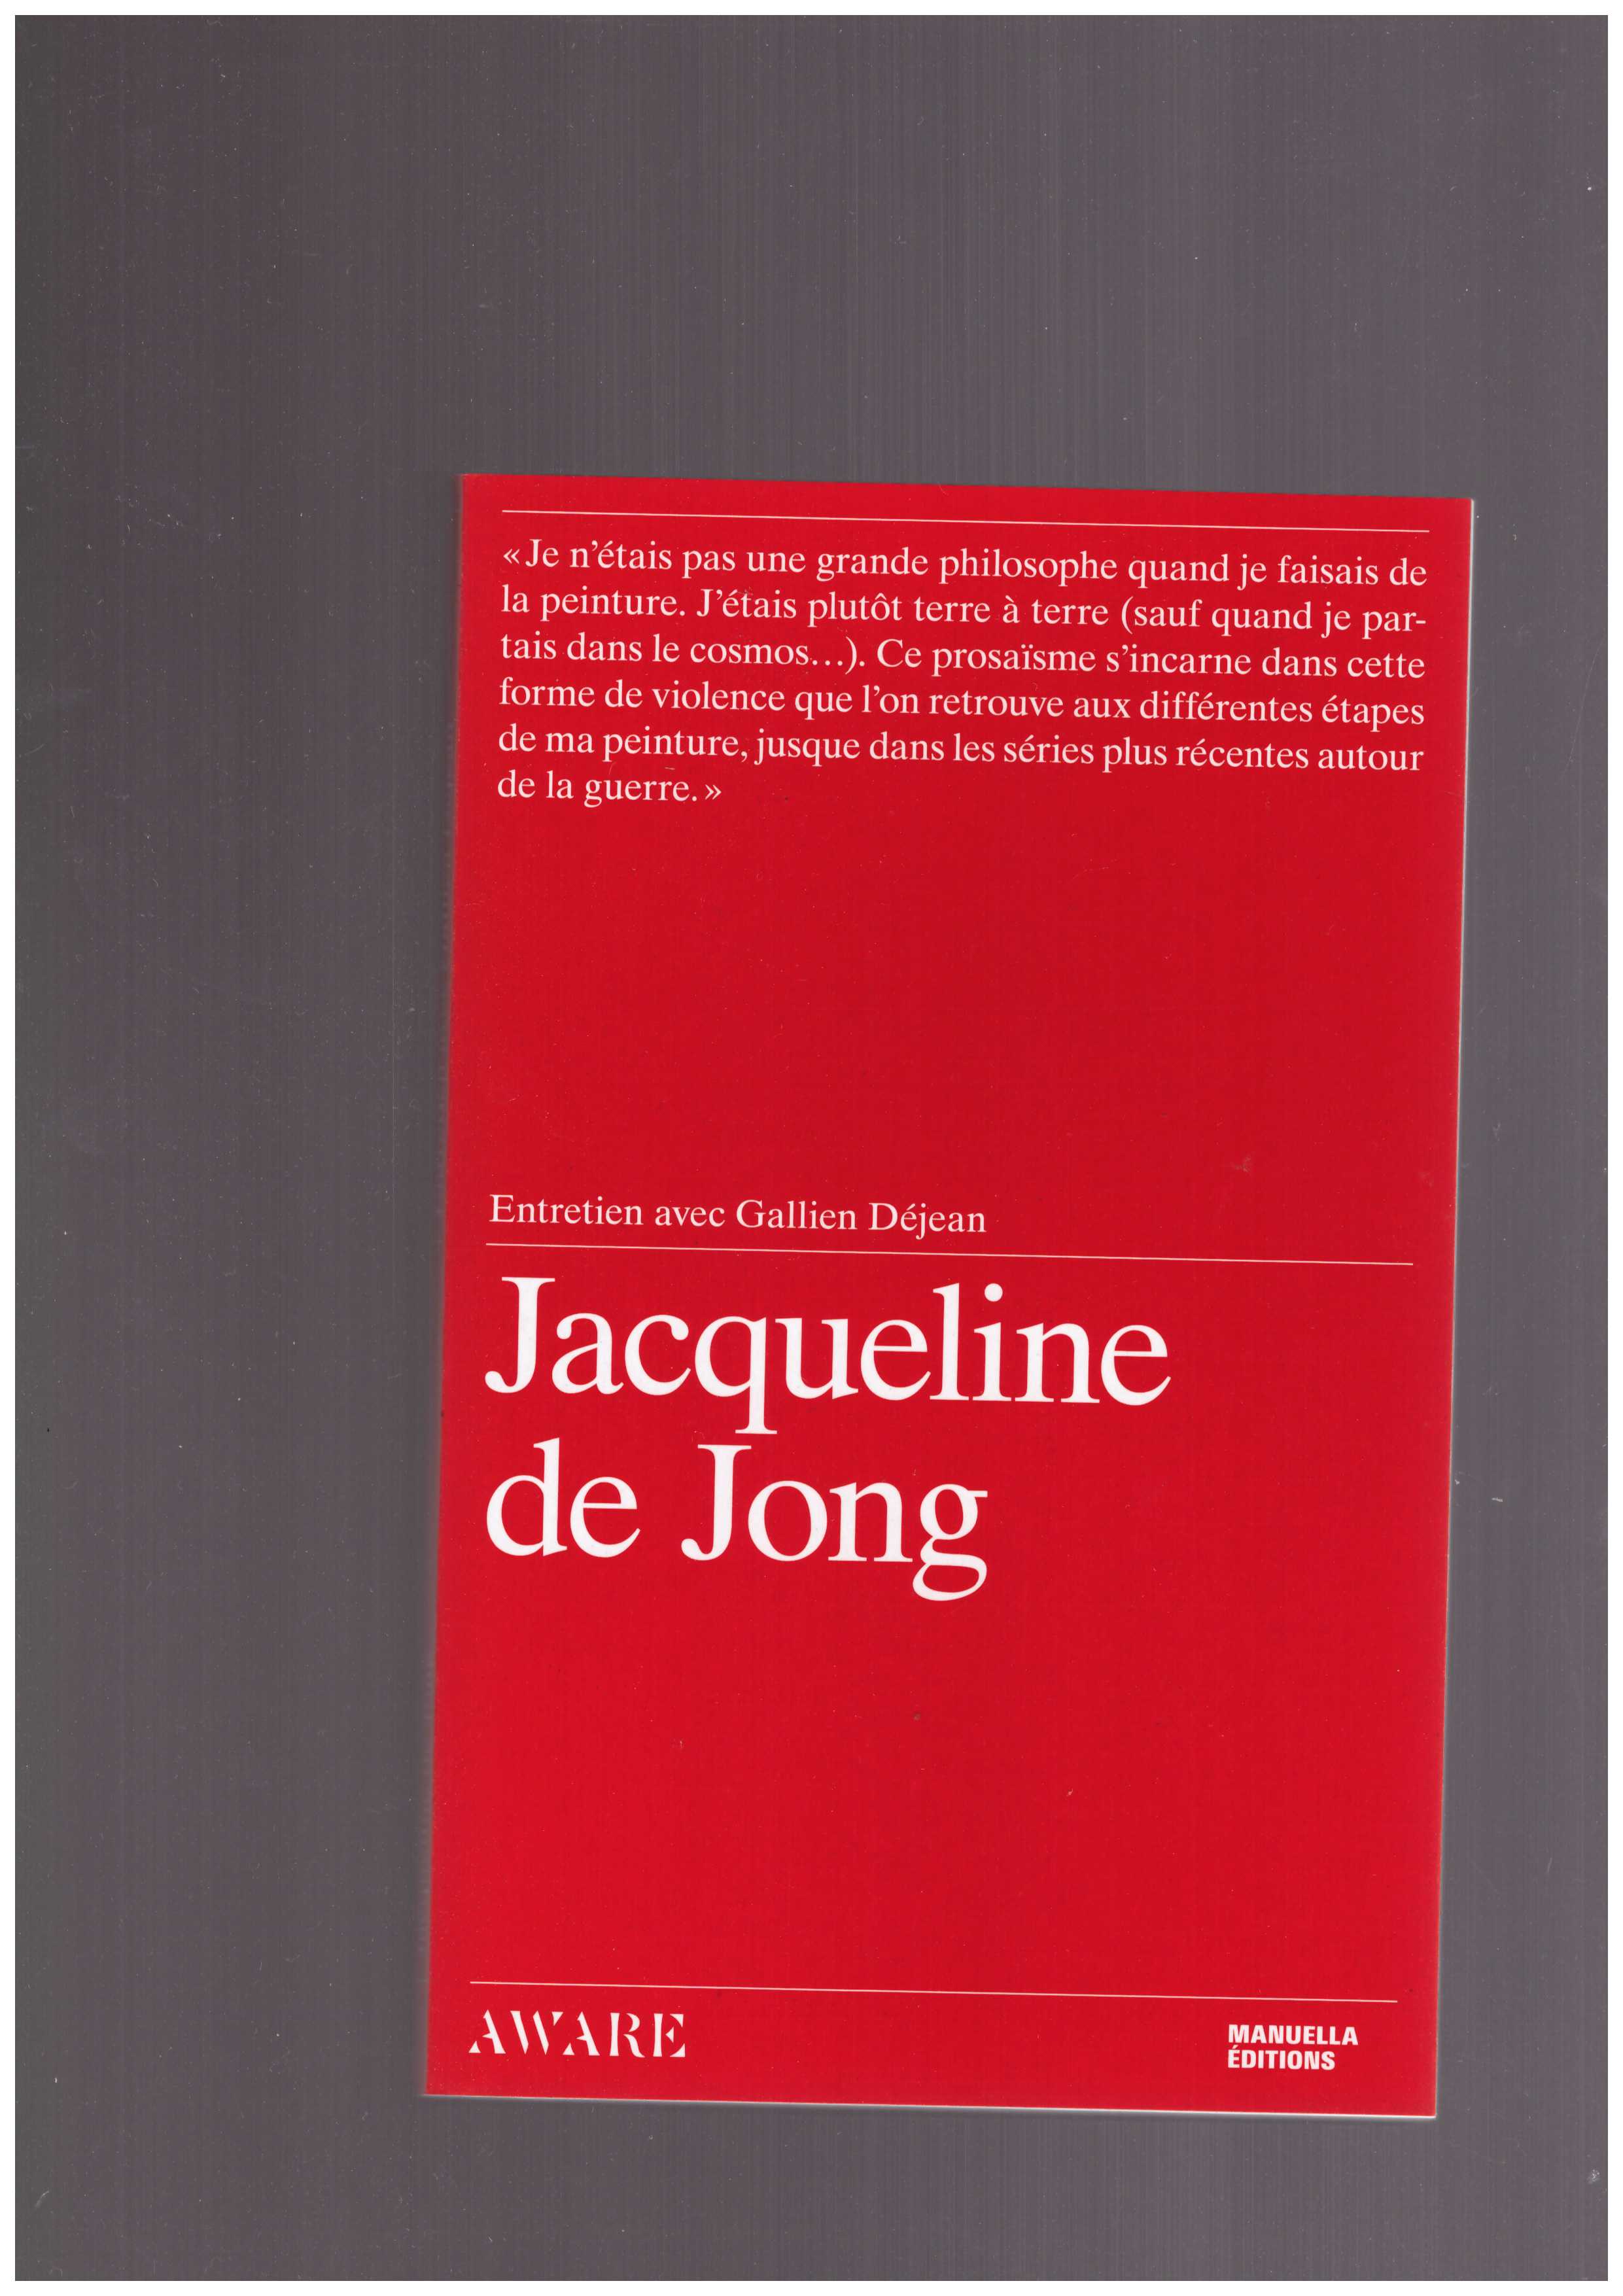 DE JONG, Jacqueline; DEJEAN, Gallien - Entretien avec Jacqueline de Jong